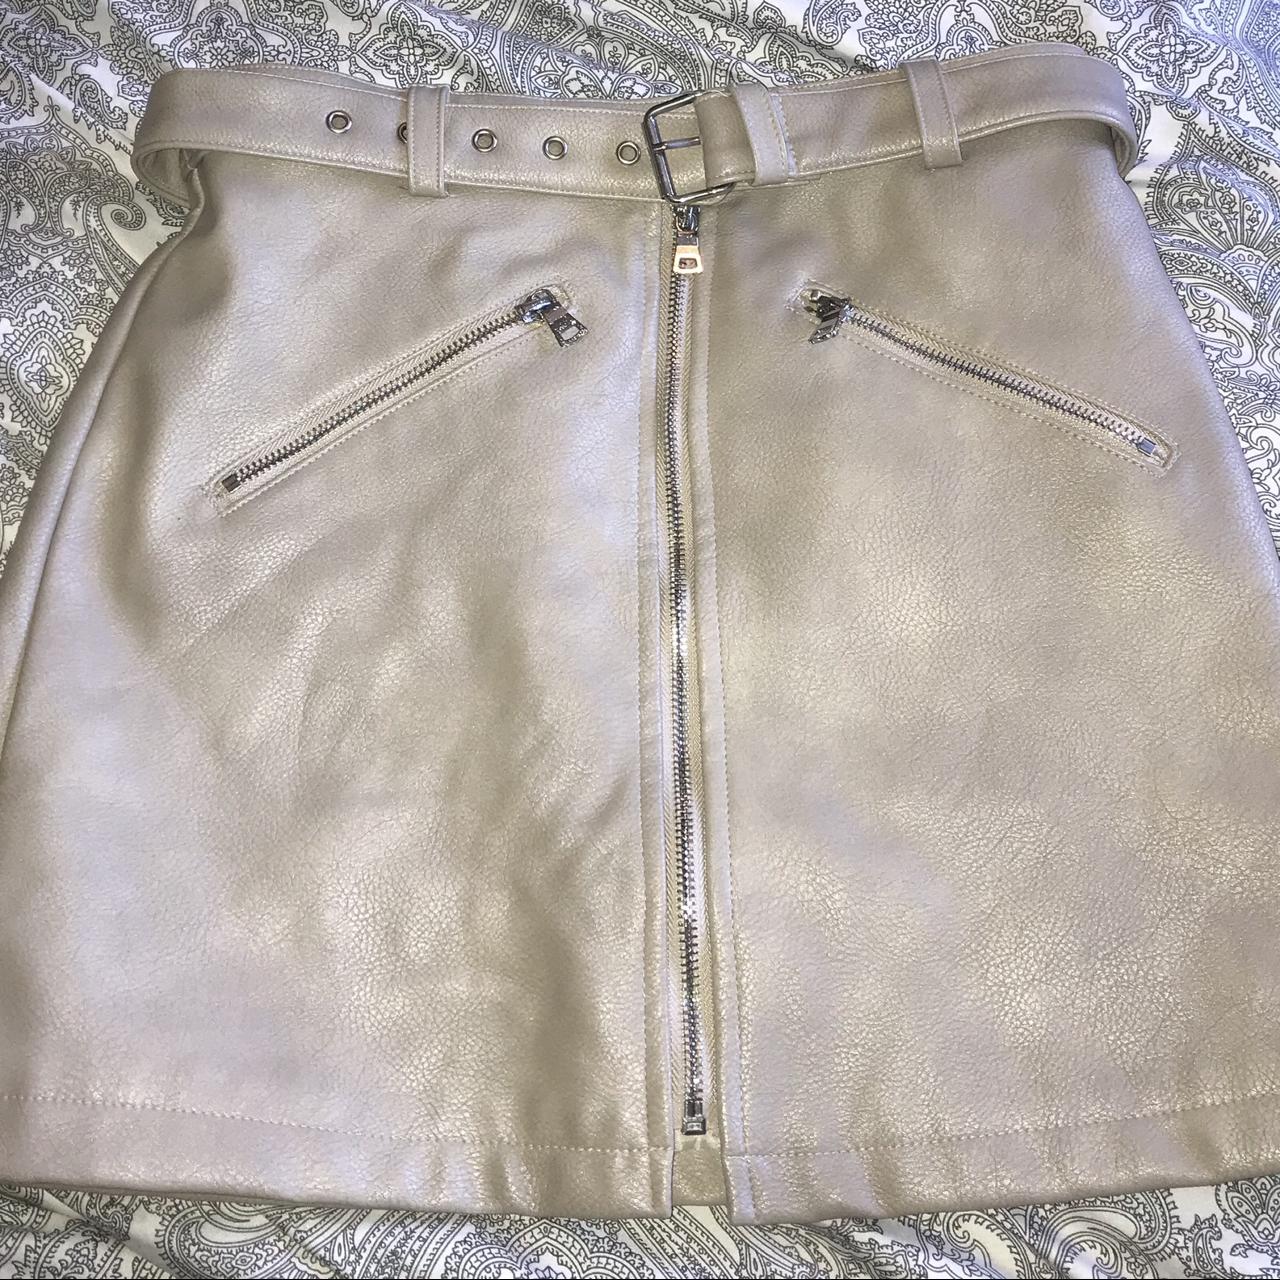 Maniere de voir Fake leather skirt Uk size 8 Belted... - Depop